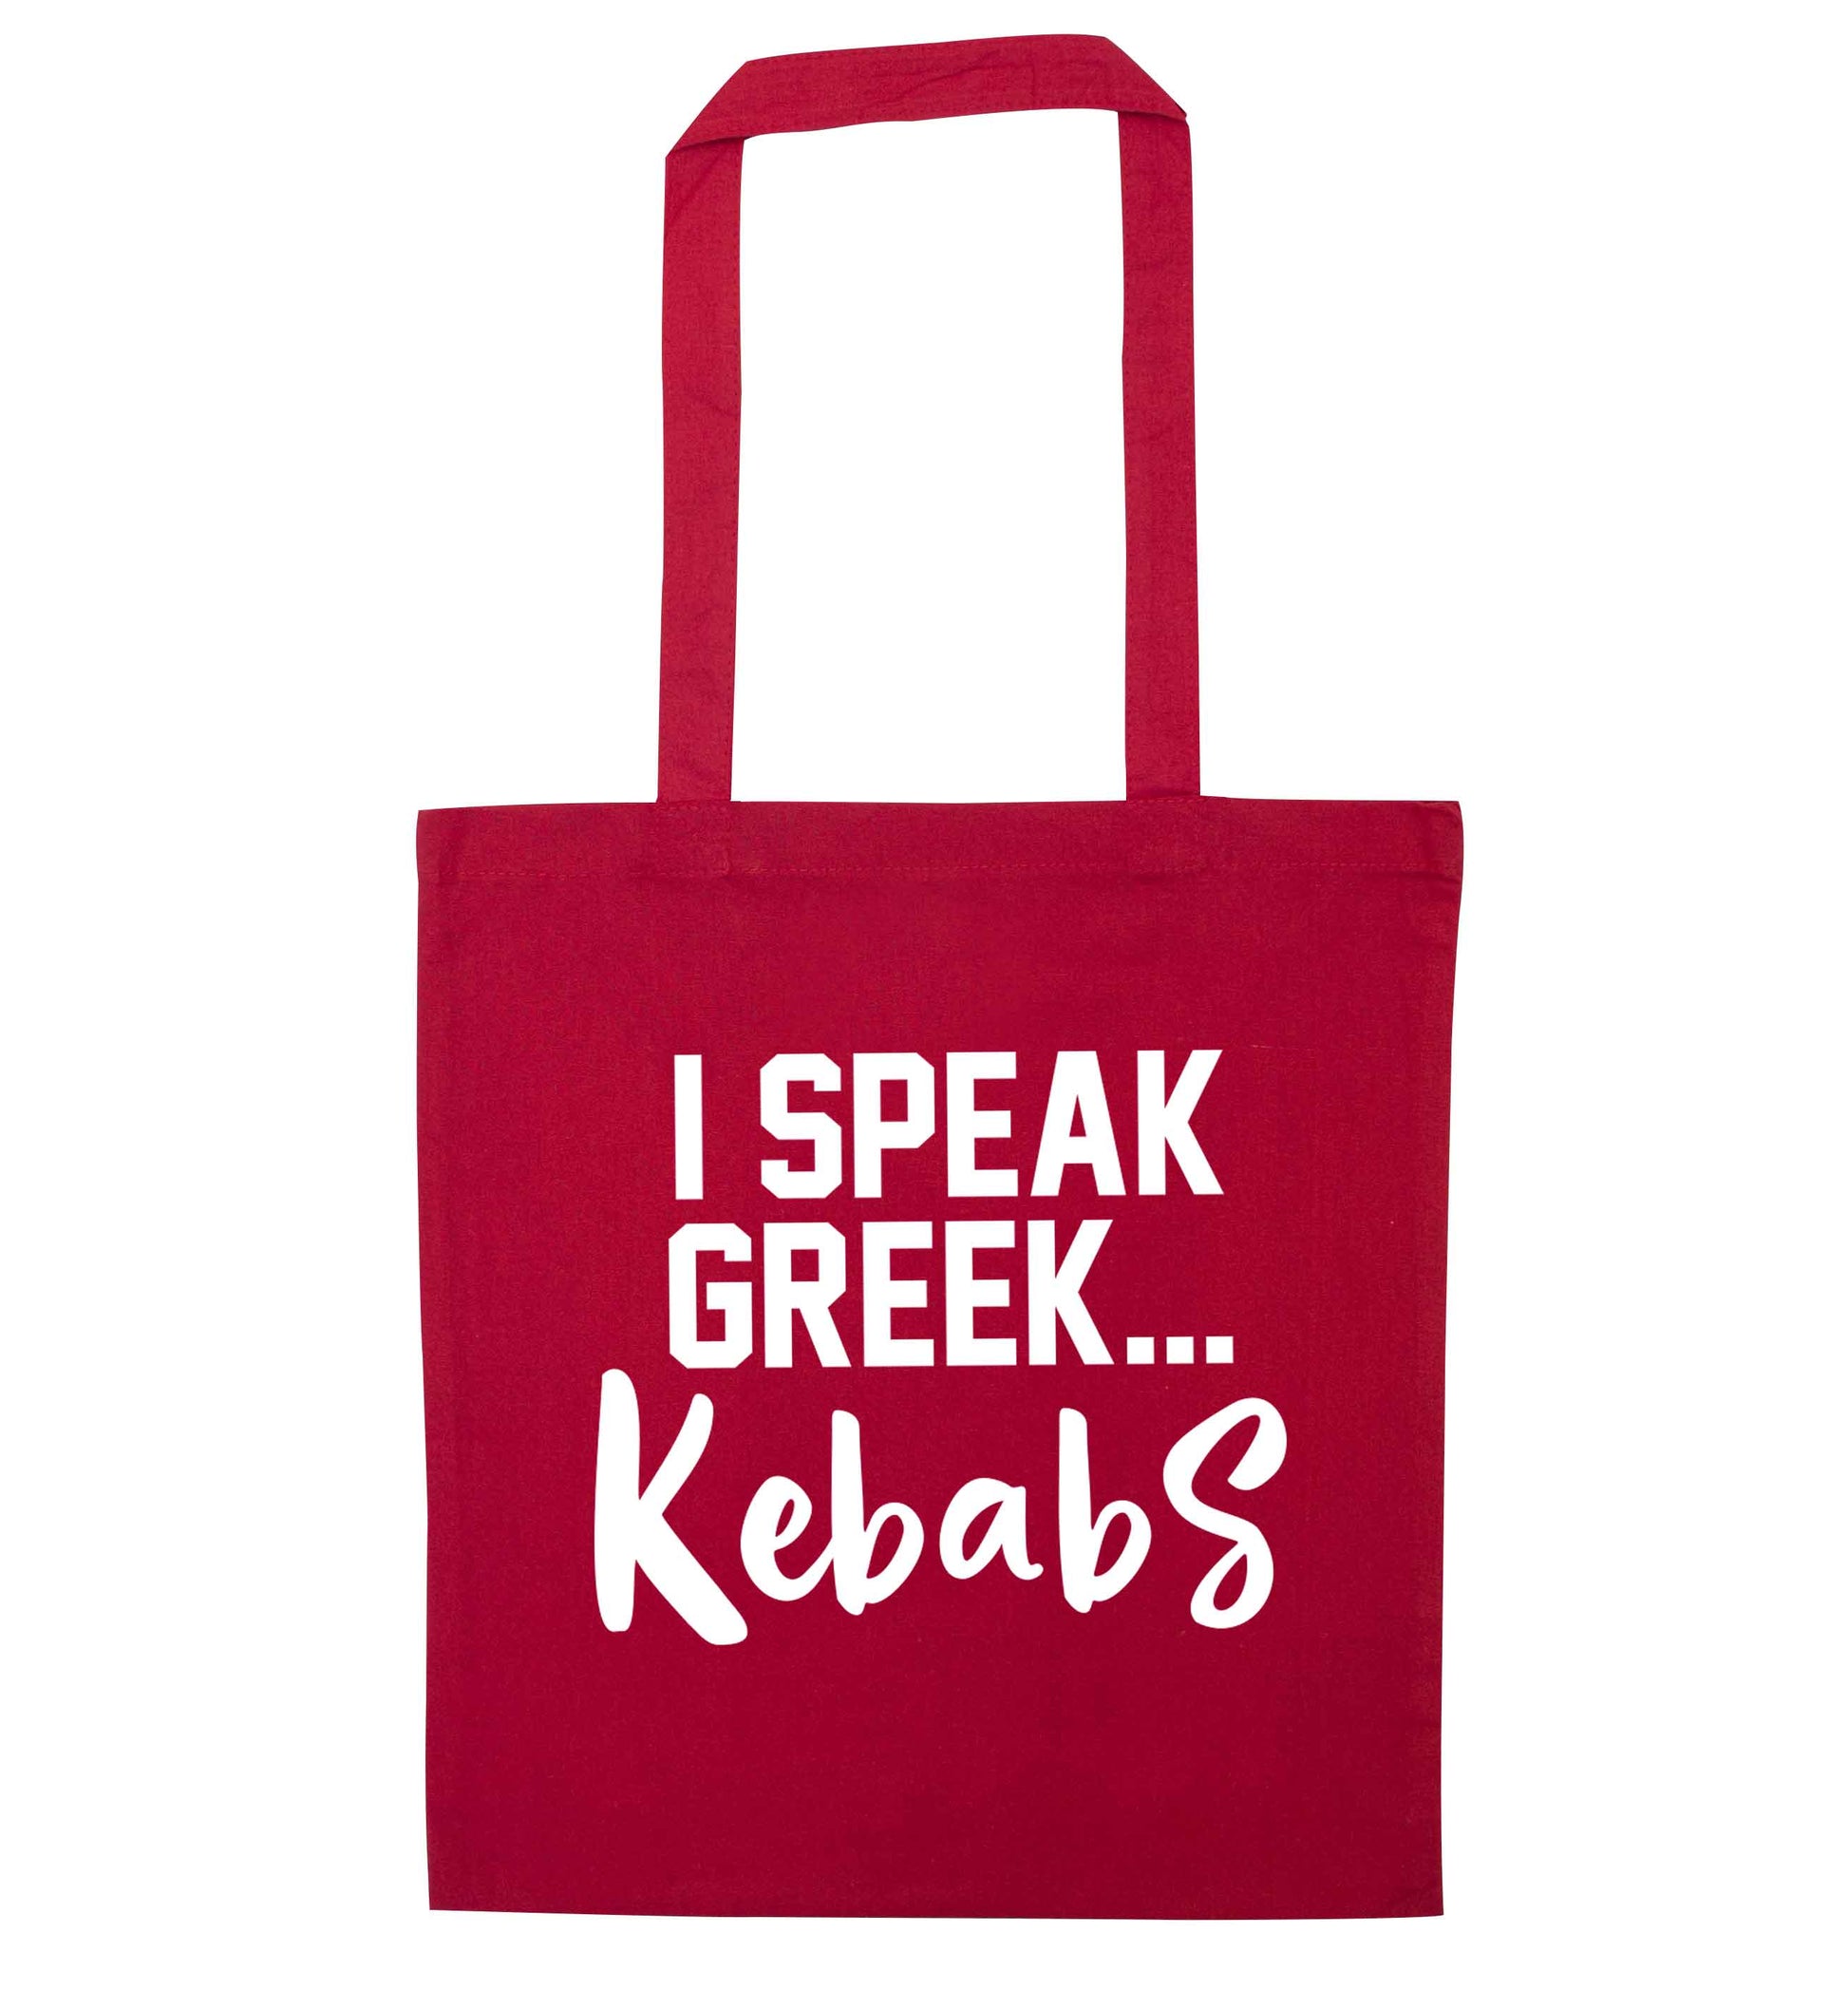 I speak Greek...kebabs red tote bag